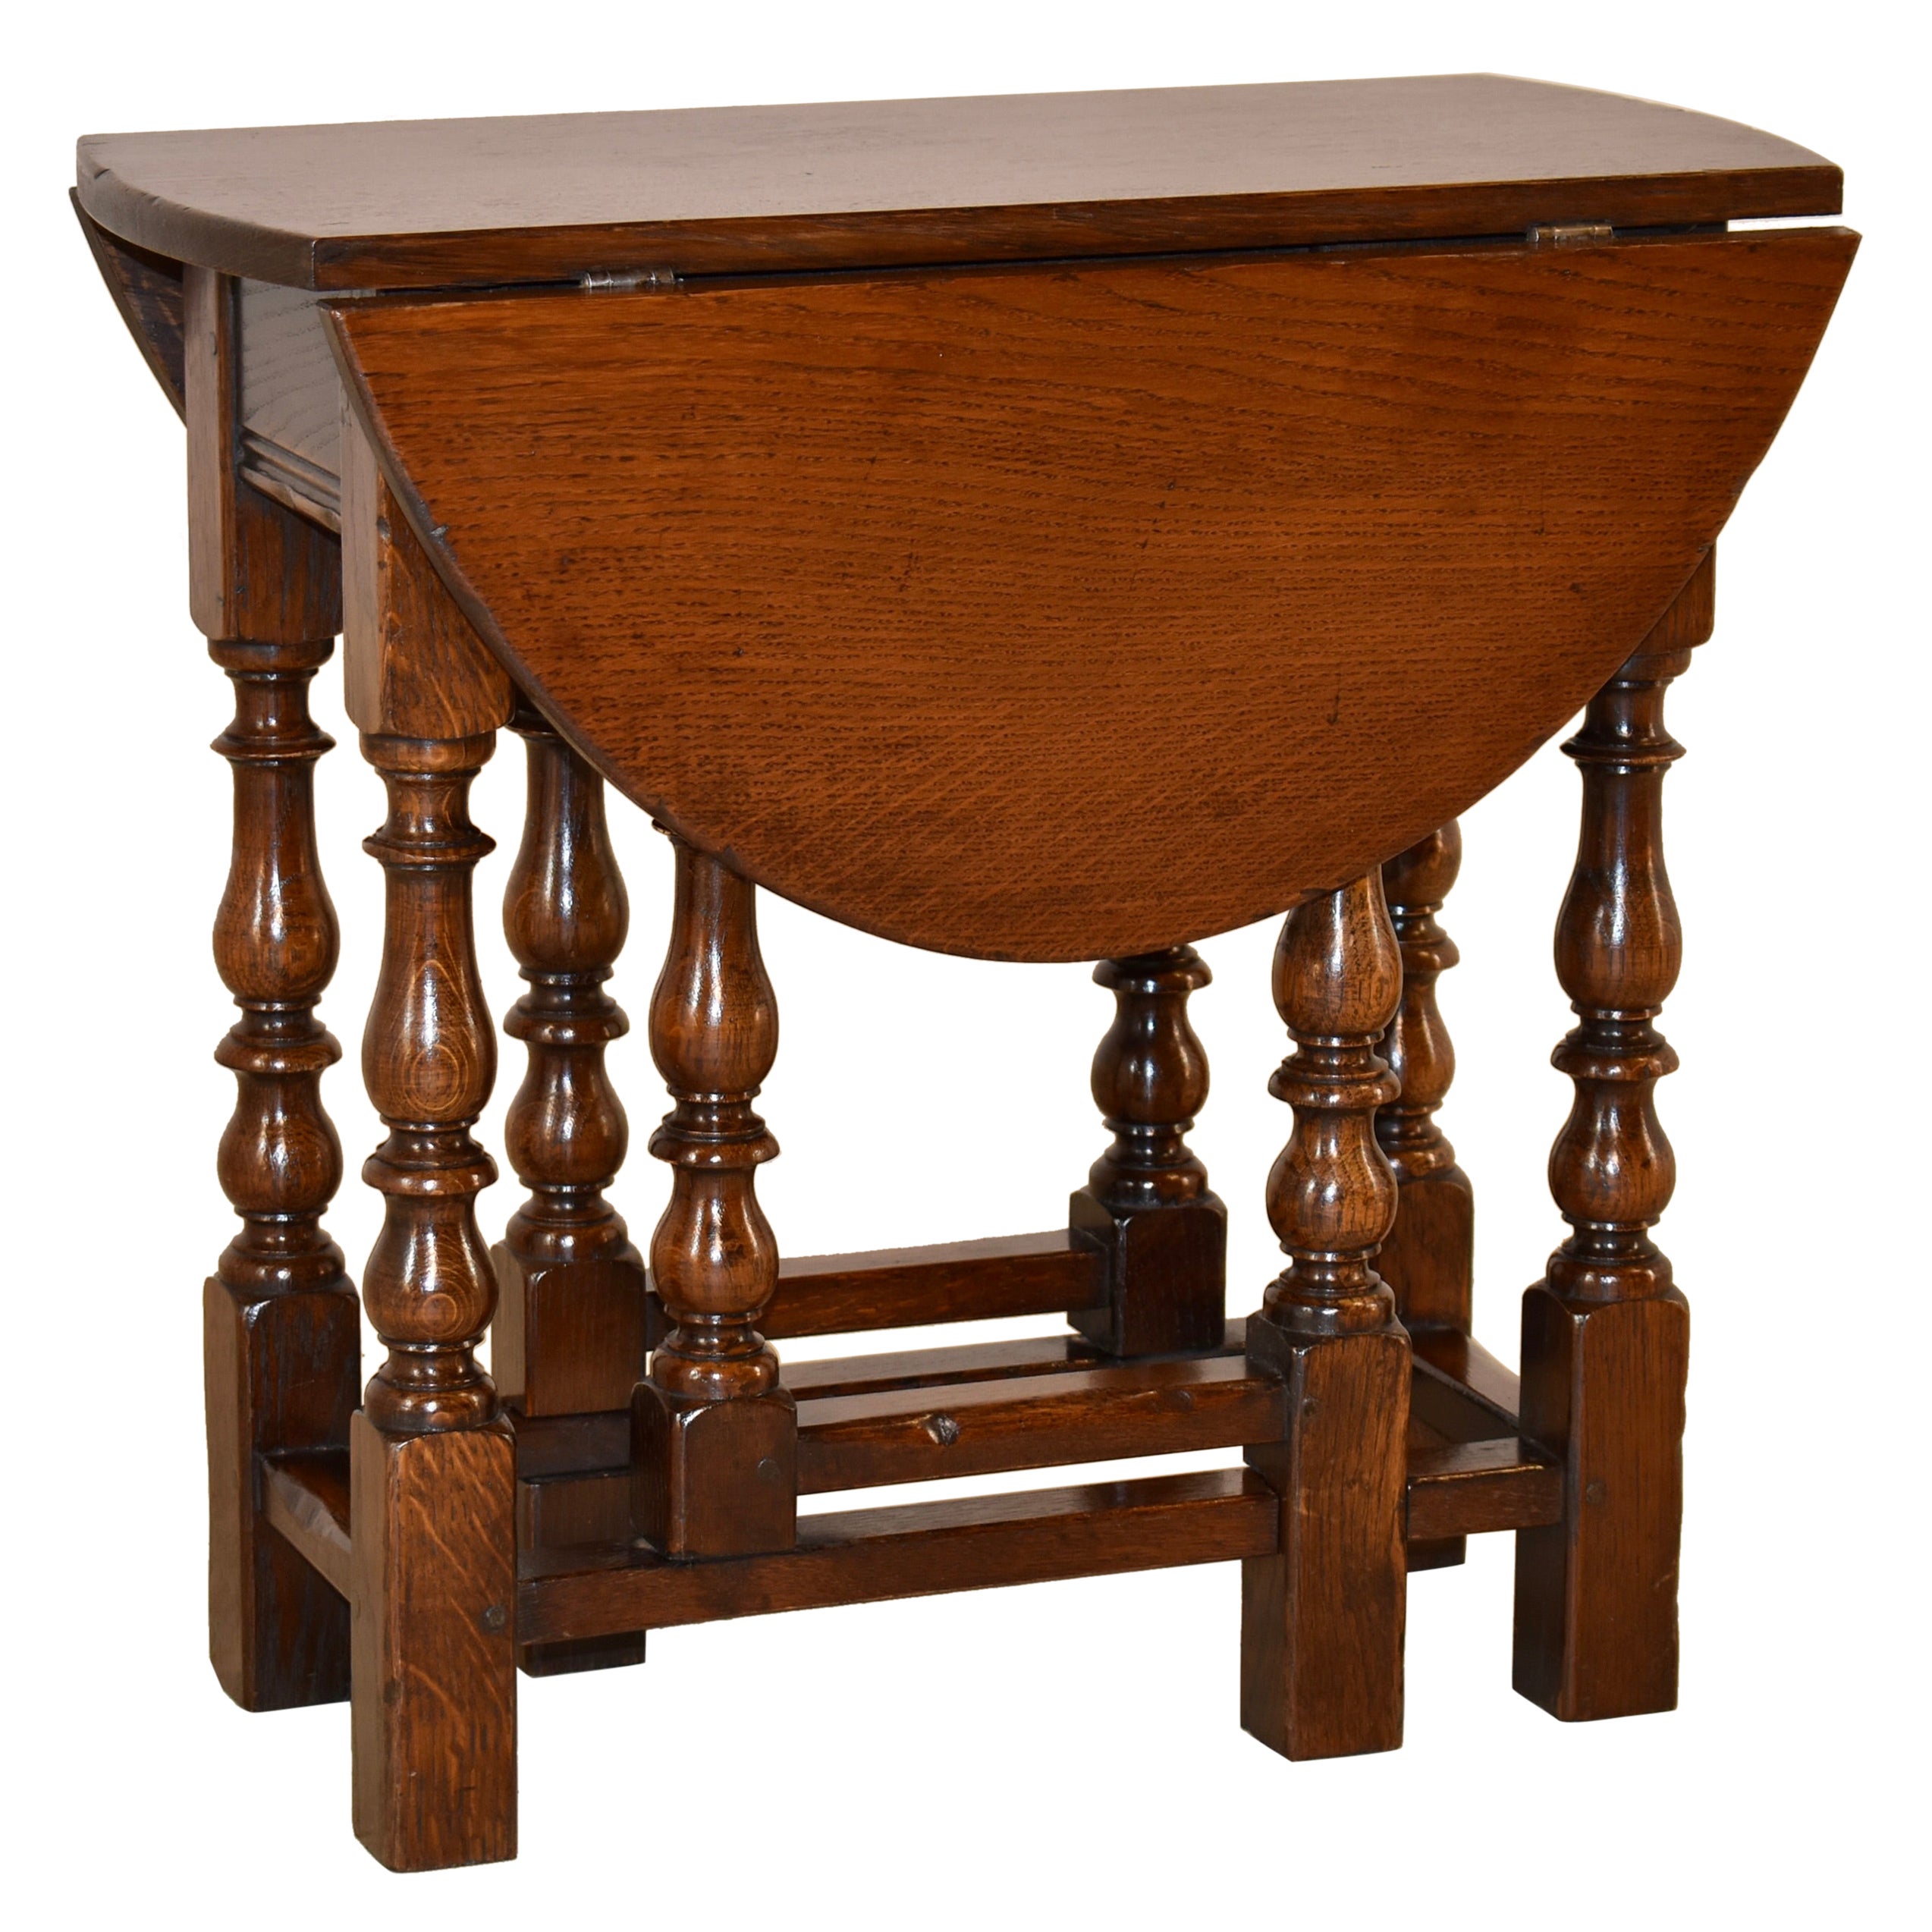 English Oak Gate-Leg Table, circa 1900